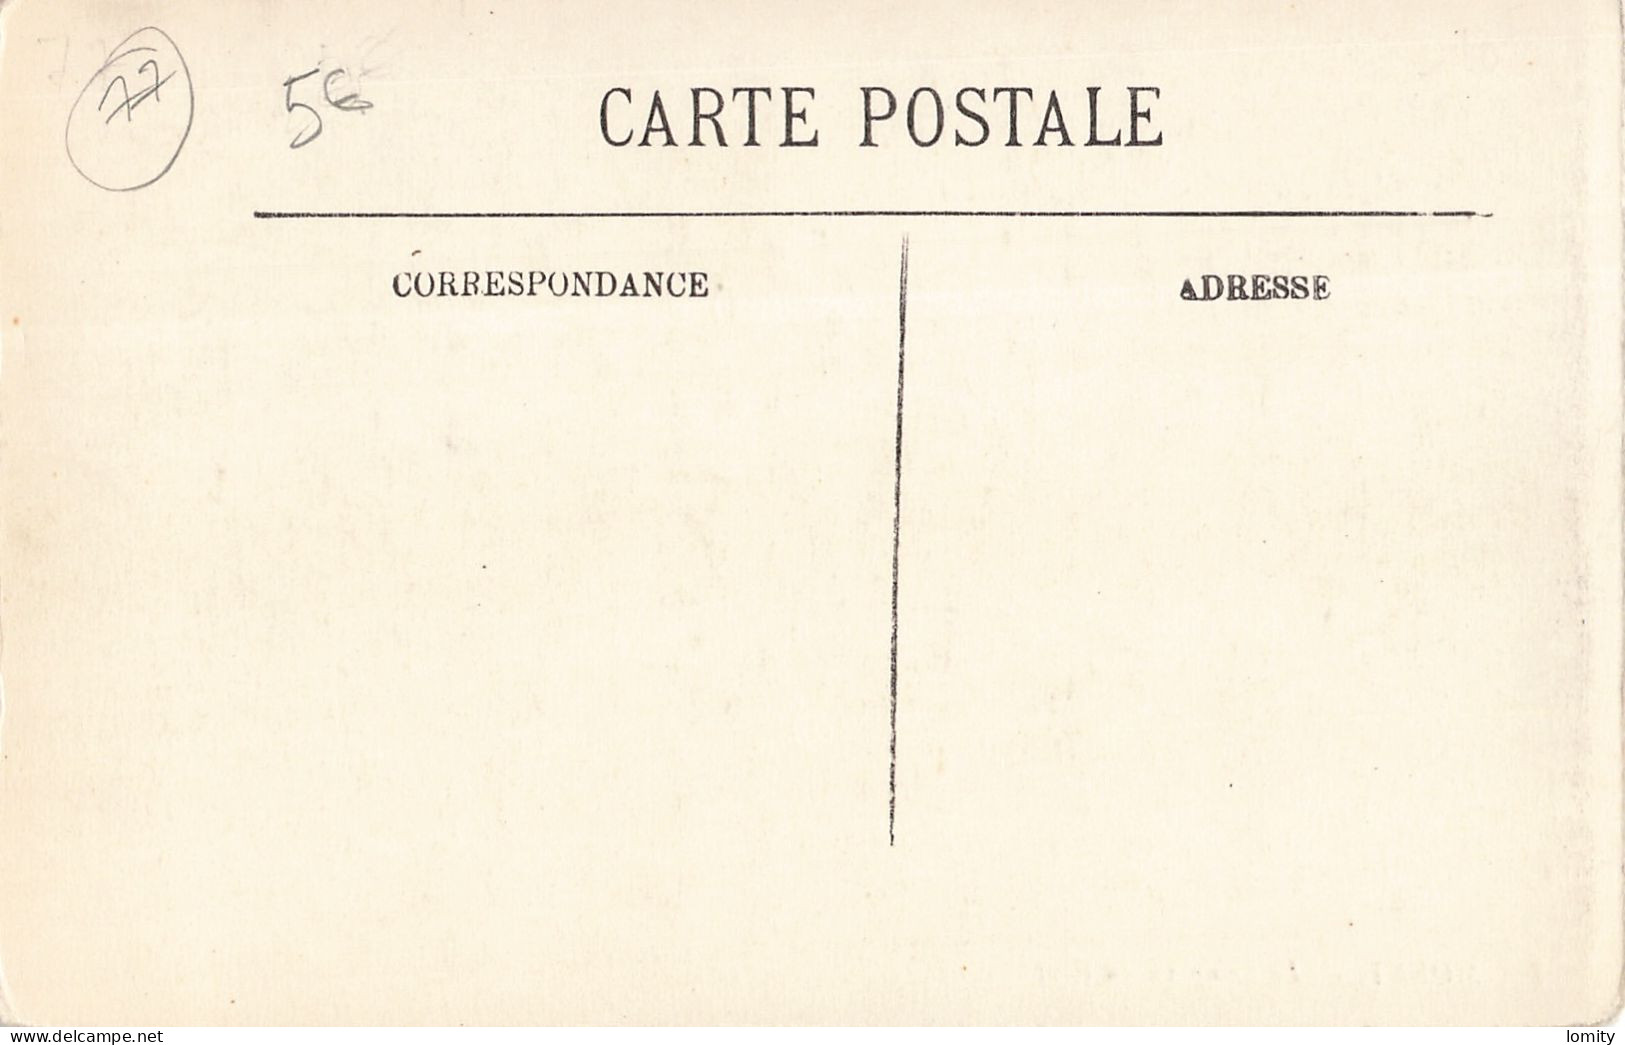 Destockage lot de 13 cartes postales CPA Seine et Marne Lagny Ferrieres en Brie Fontainebleau Dammarie les Lys Melun